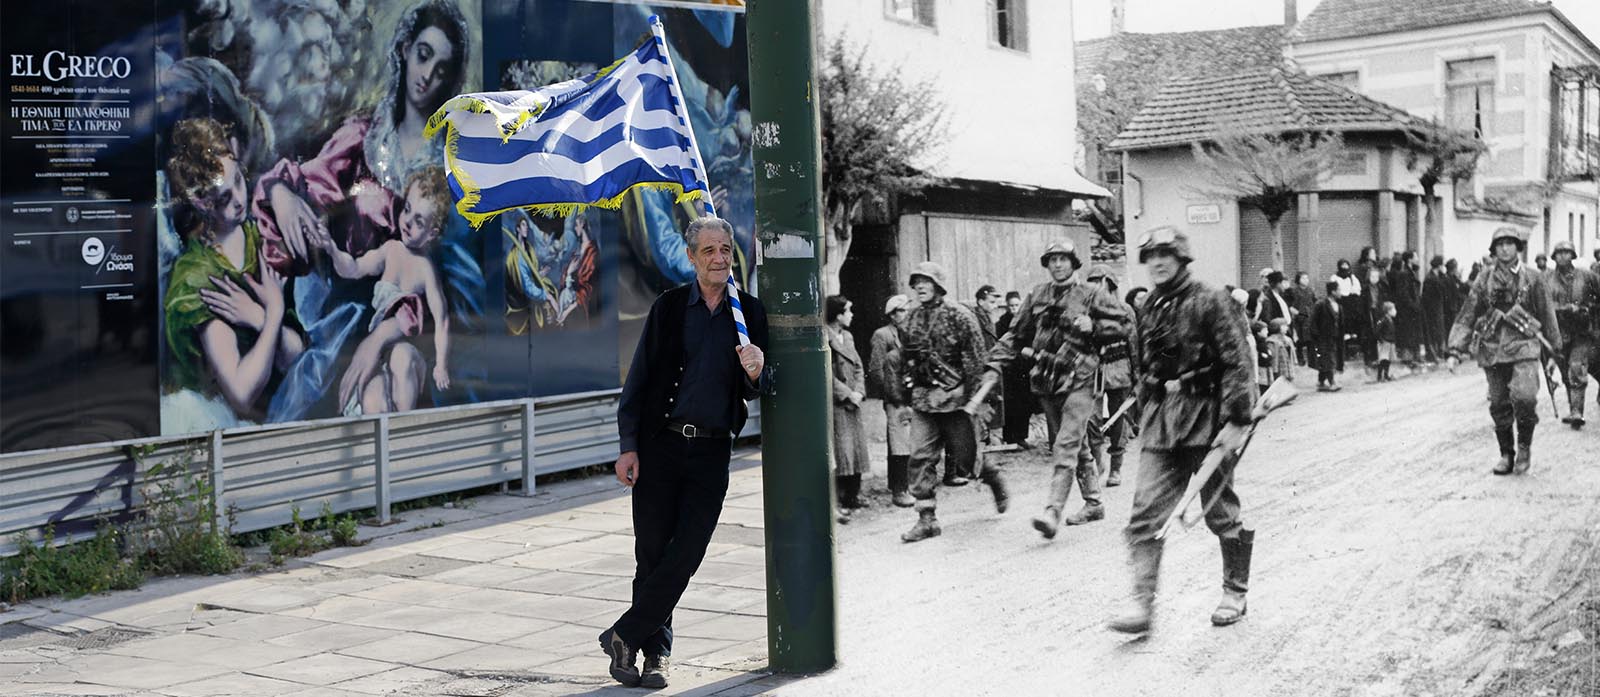 כיבוש יוון על ידי גרמניה במלחמת העולם השנייה, ומפגין נגד הסכם החילוץ של יוון ב-2016 (צילום: AP Photo)